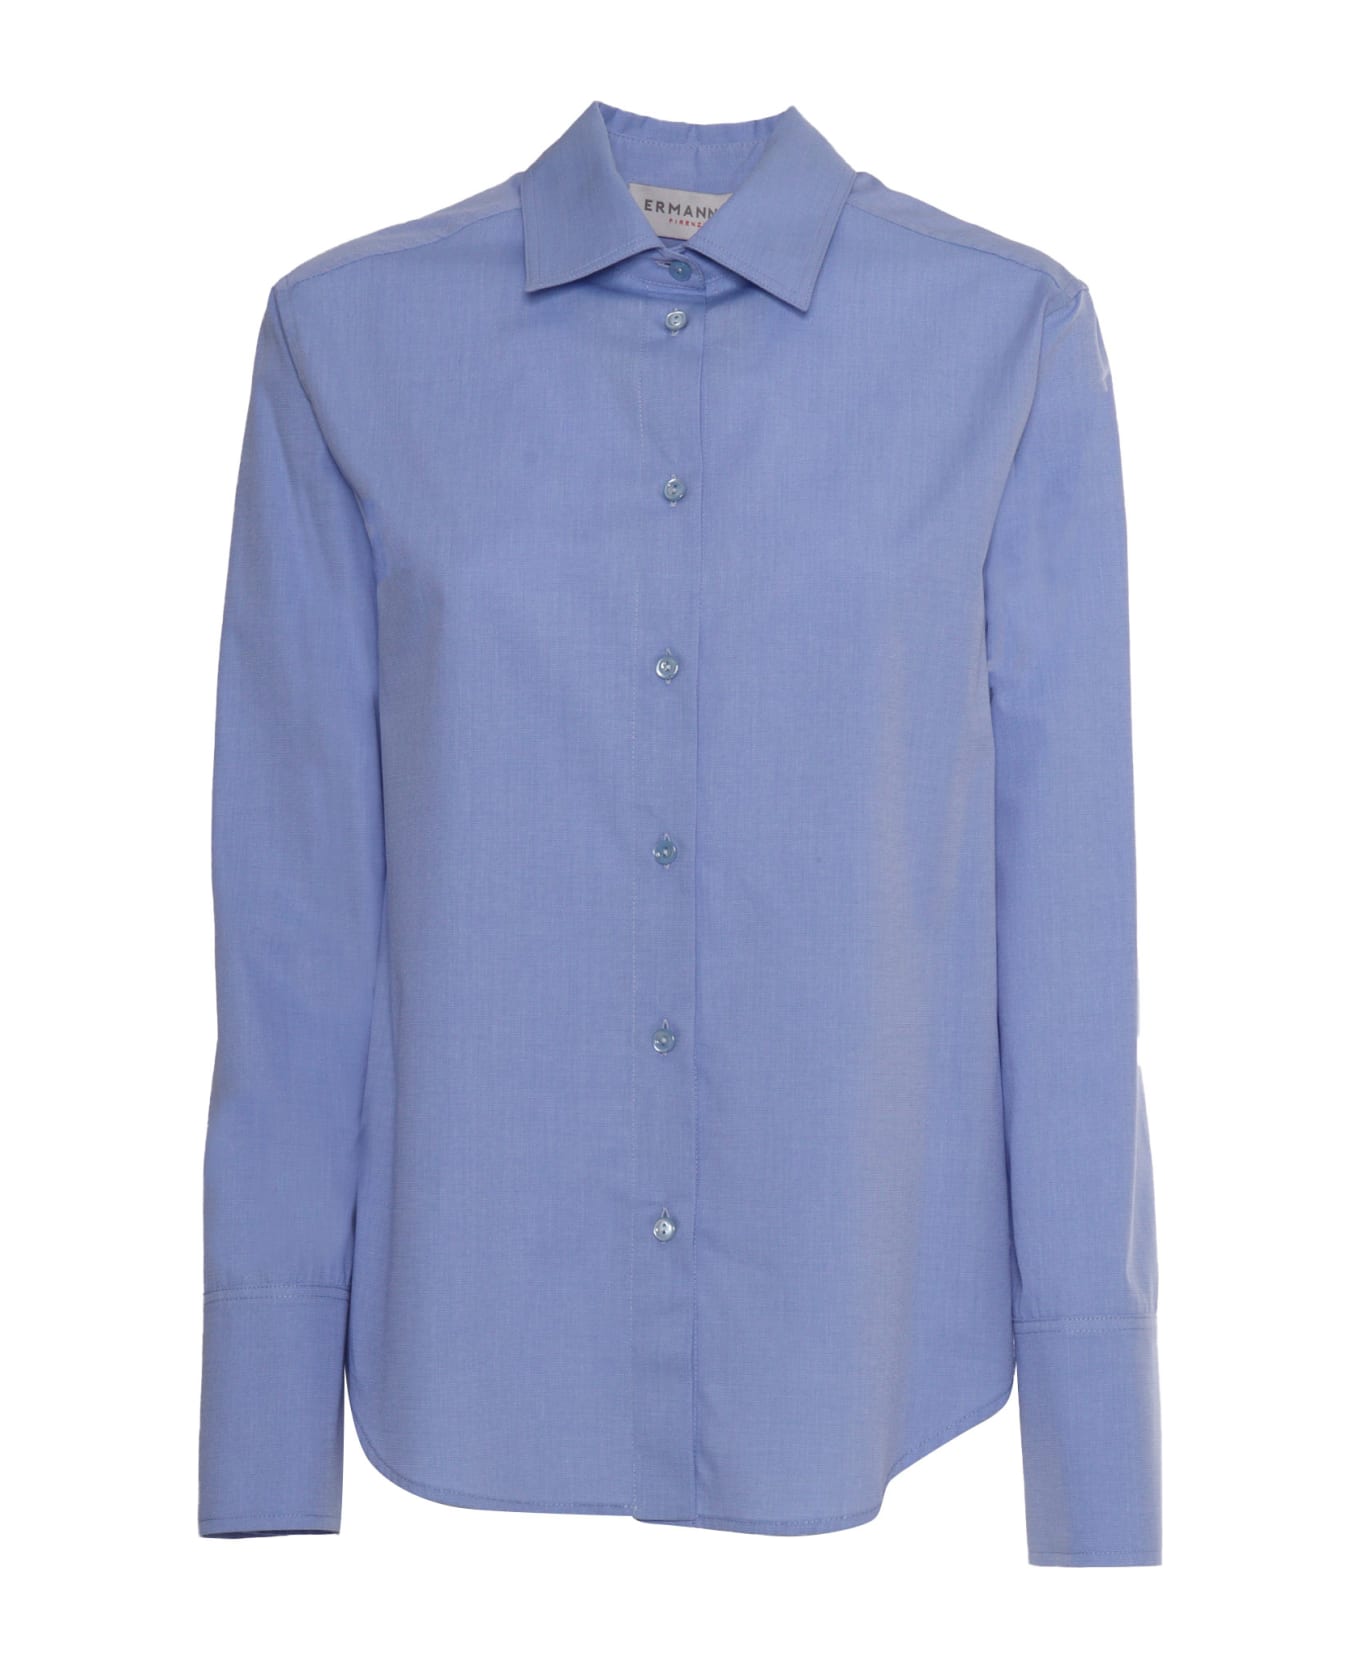 Ermanno Ermanno Scervino Light Blue Shirt - LIGHT BLUE シャツ